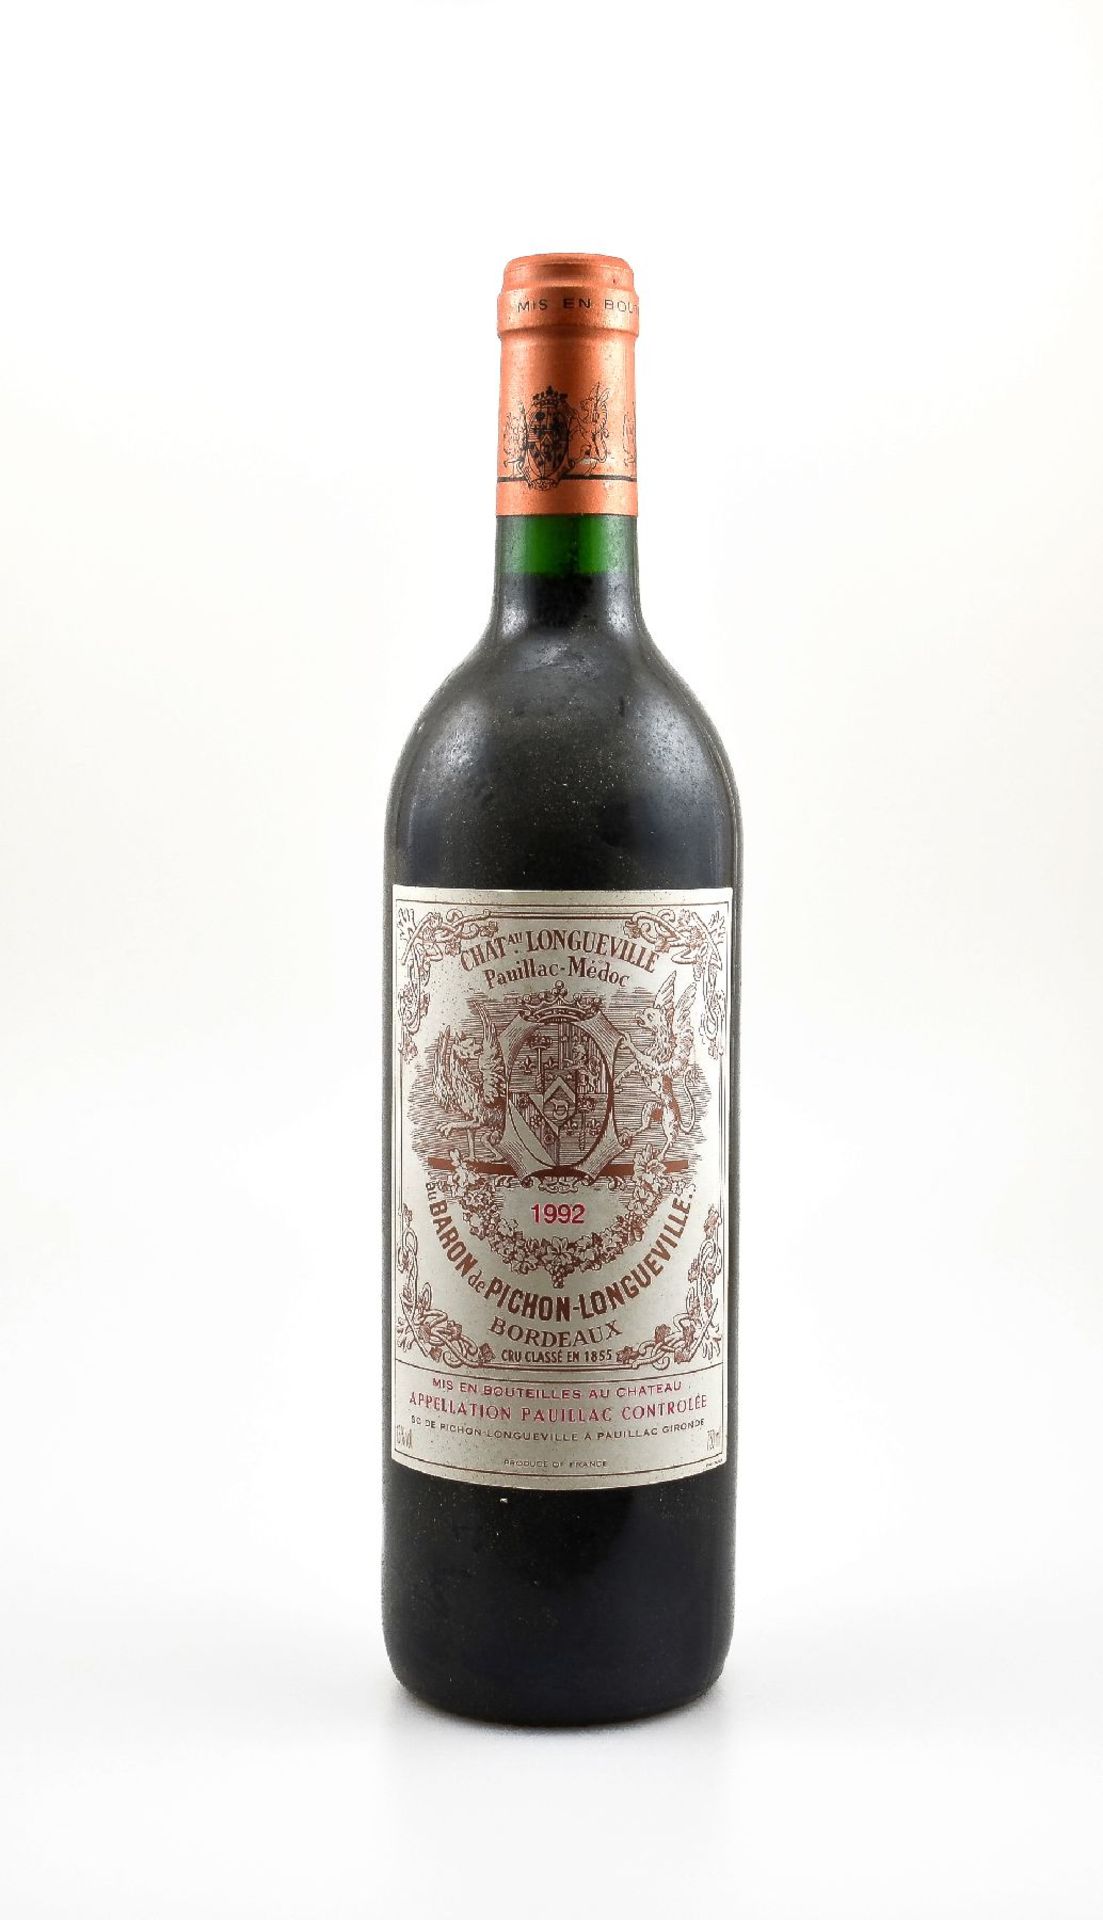 3 bottles of 1992 Chateau Pichon-Longueville au Baron de Pichon-Longueville, Pauillac, Cru Classe,